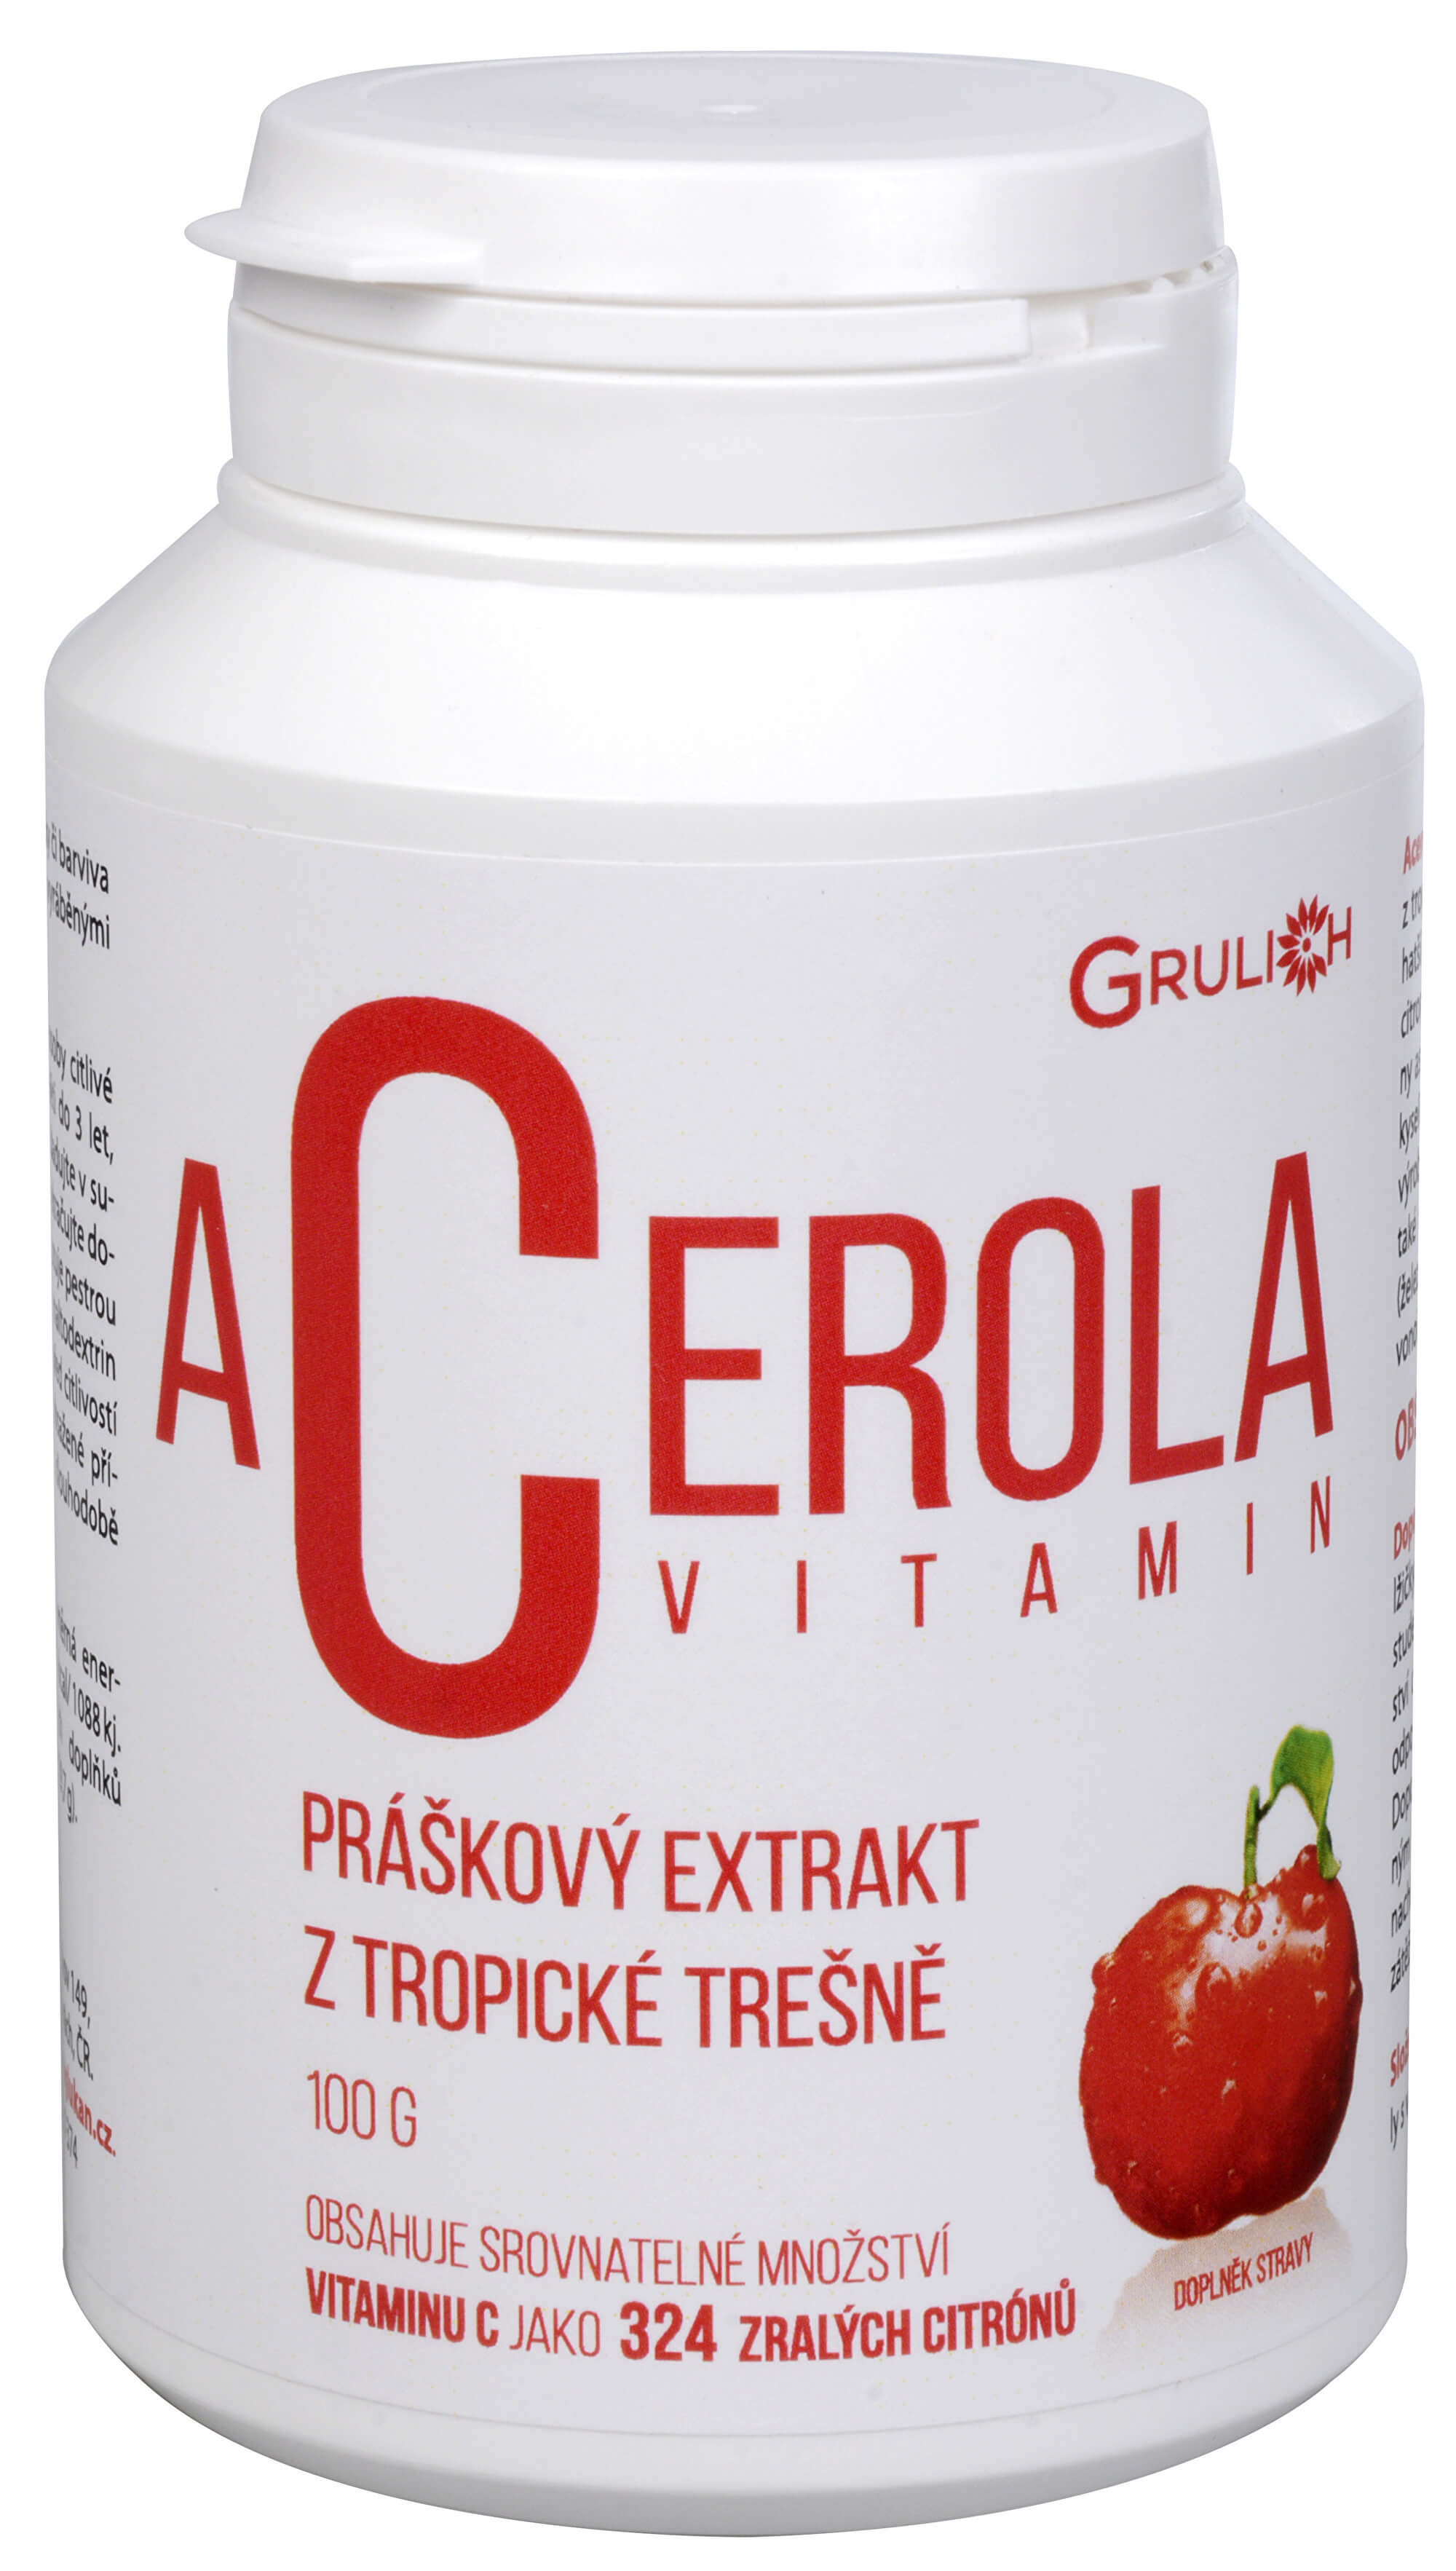 Zobrazit detail výrobku Grulich Acerola vitamín 100 g